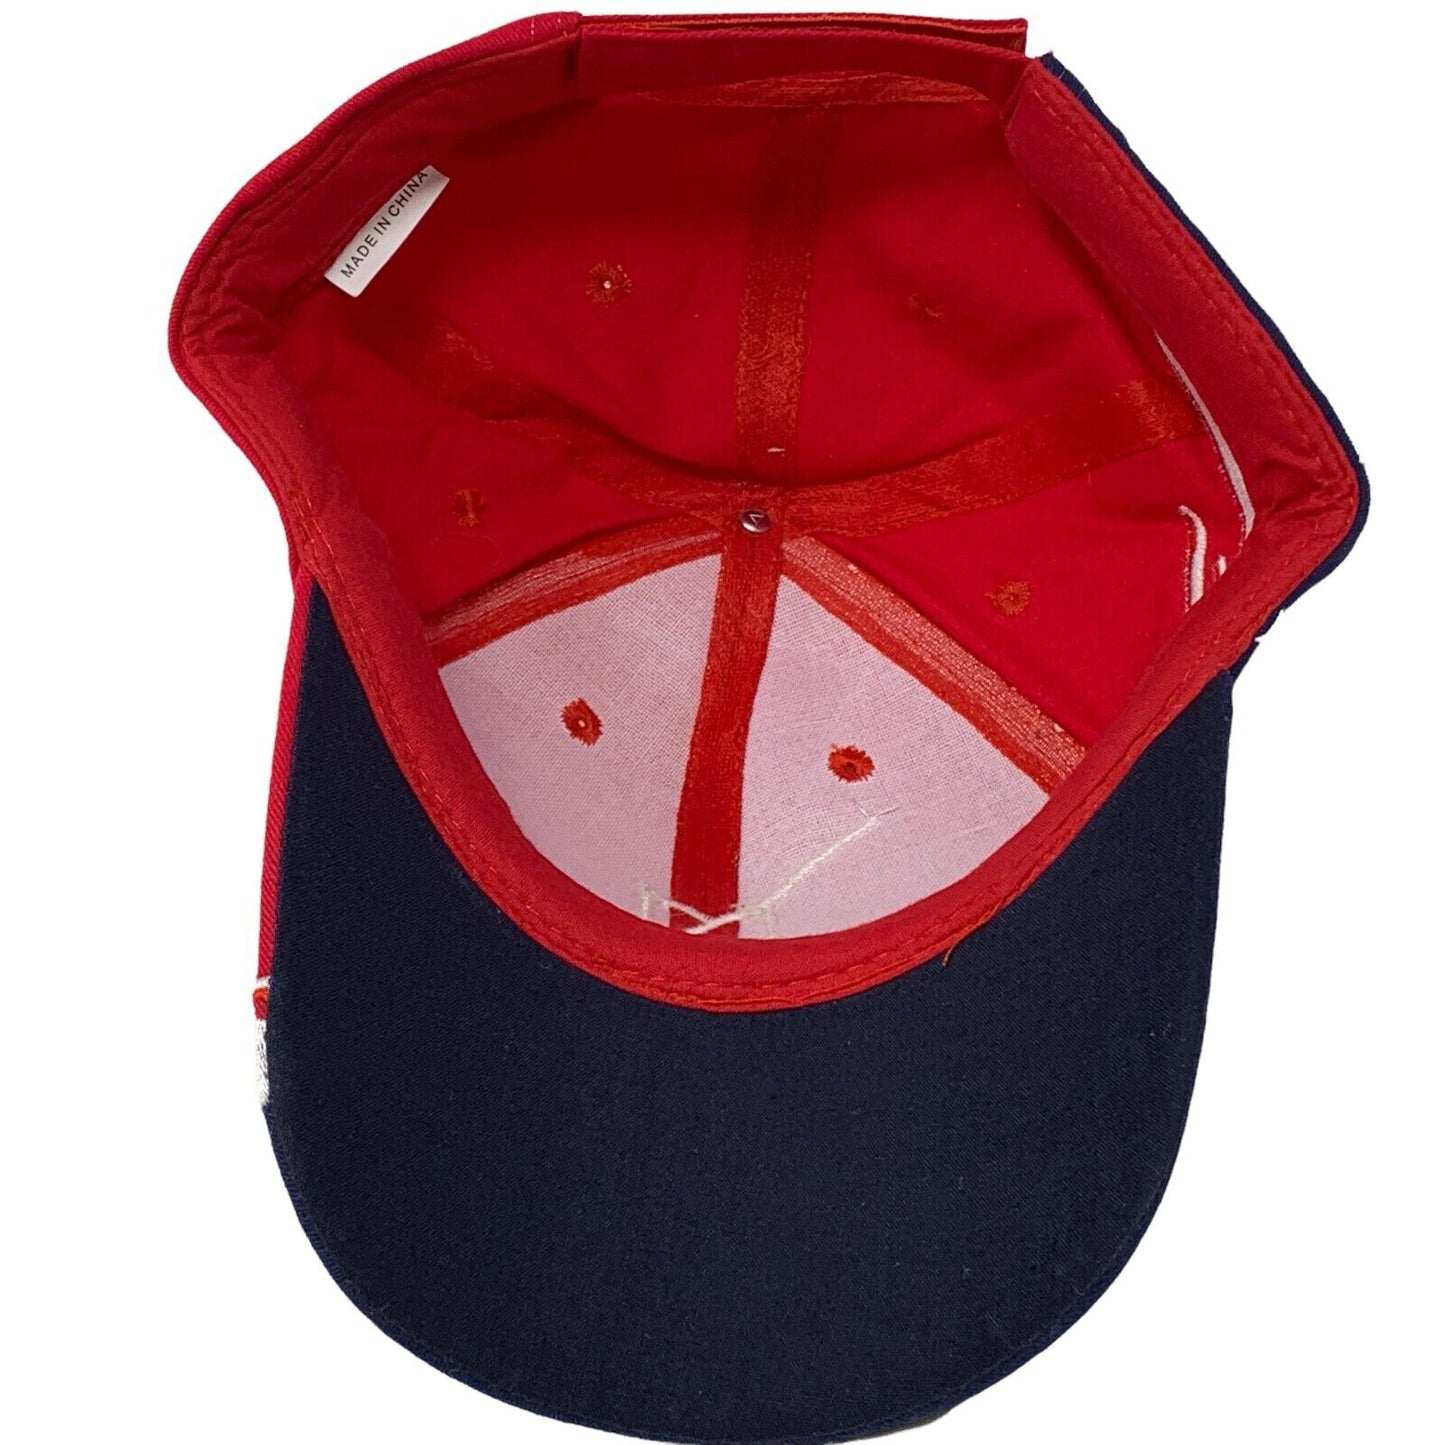 M Resort Spa 赌场拉斯维加斯斜背帽子美国国旗爱国棒球帽